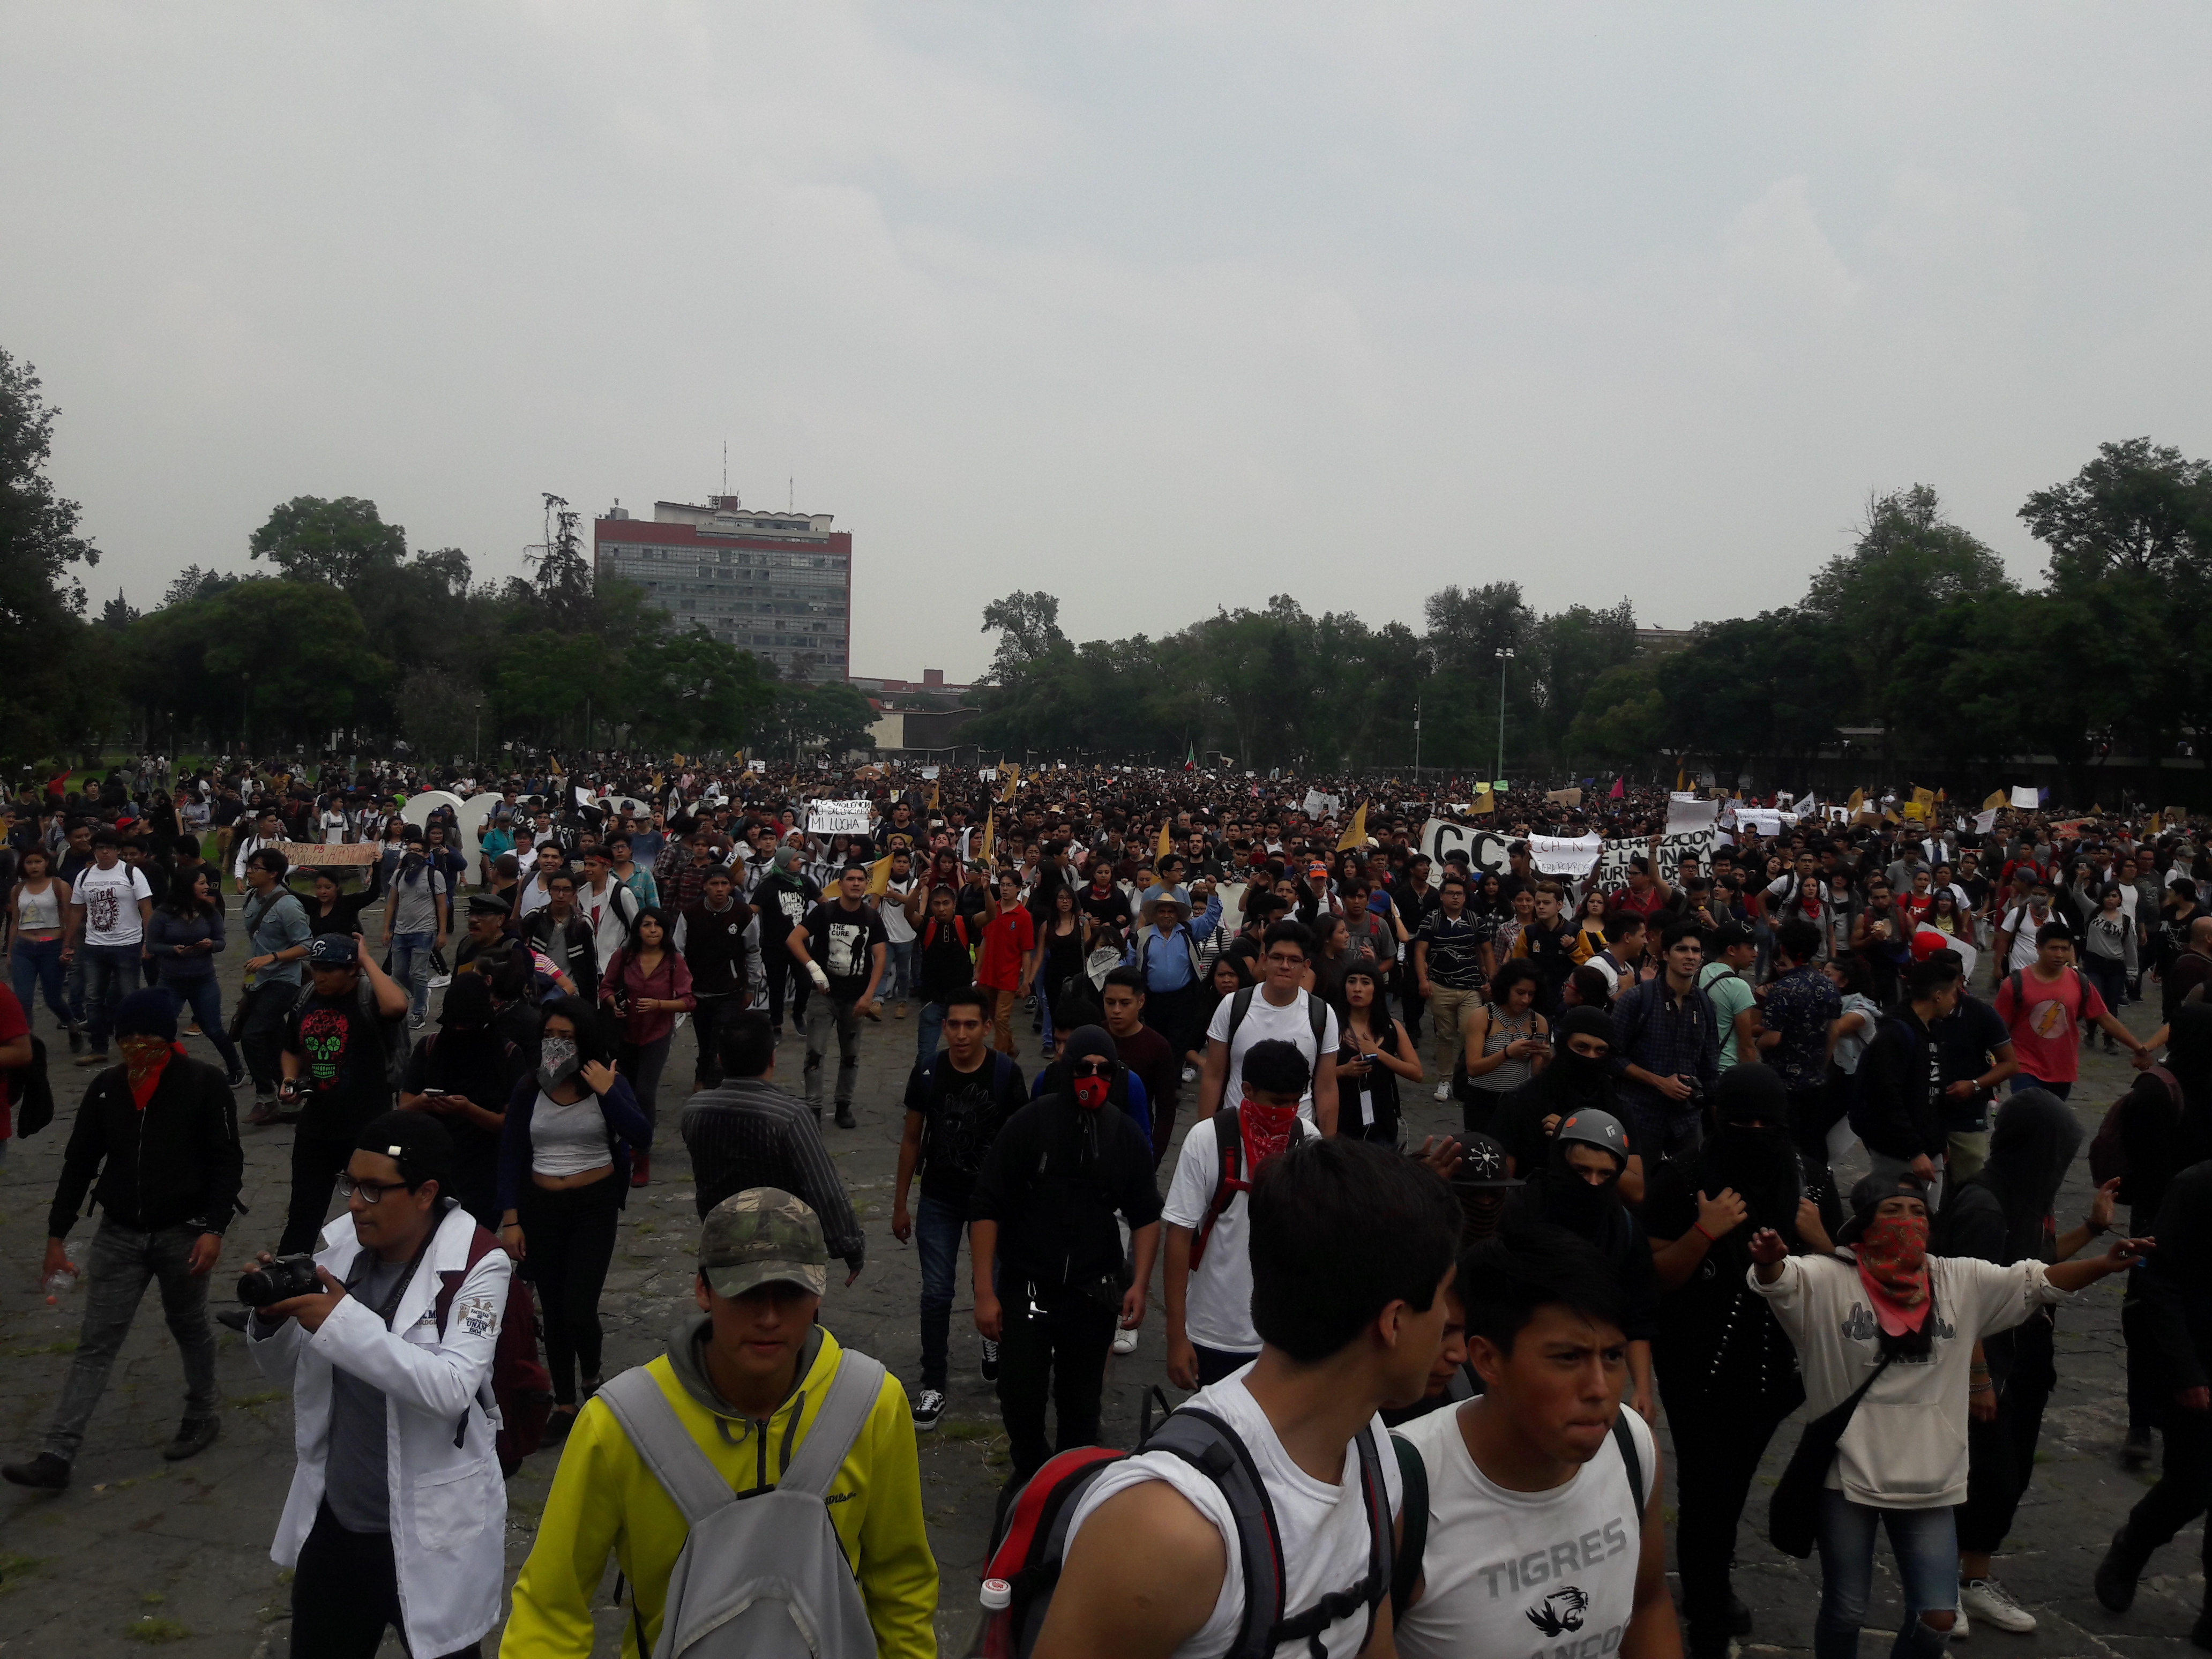 Marchan miles contra los porros en la UNAM - 07/09/2018 - Videonota